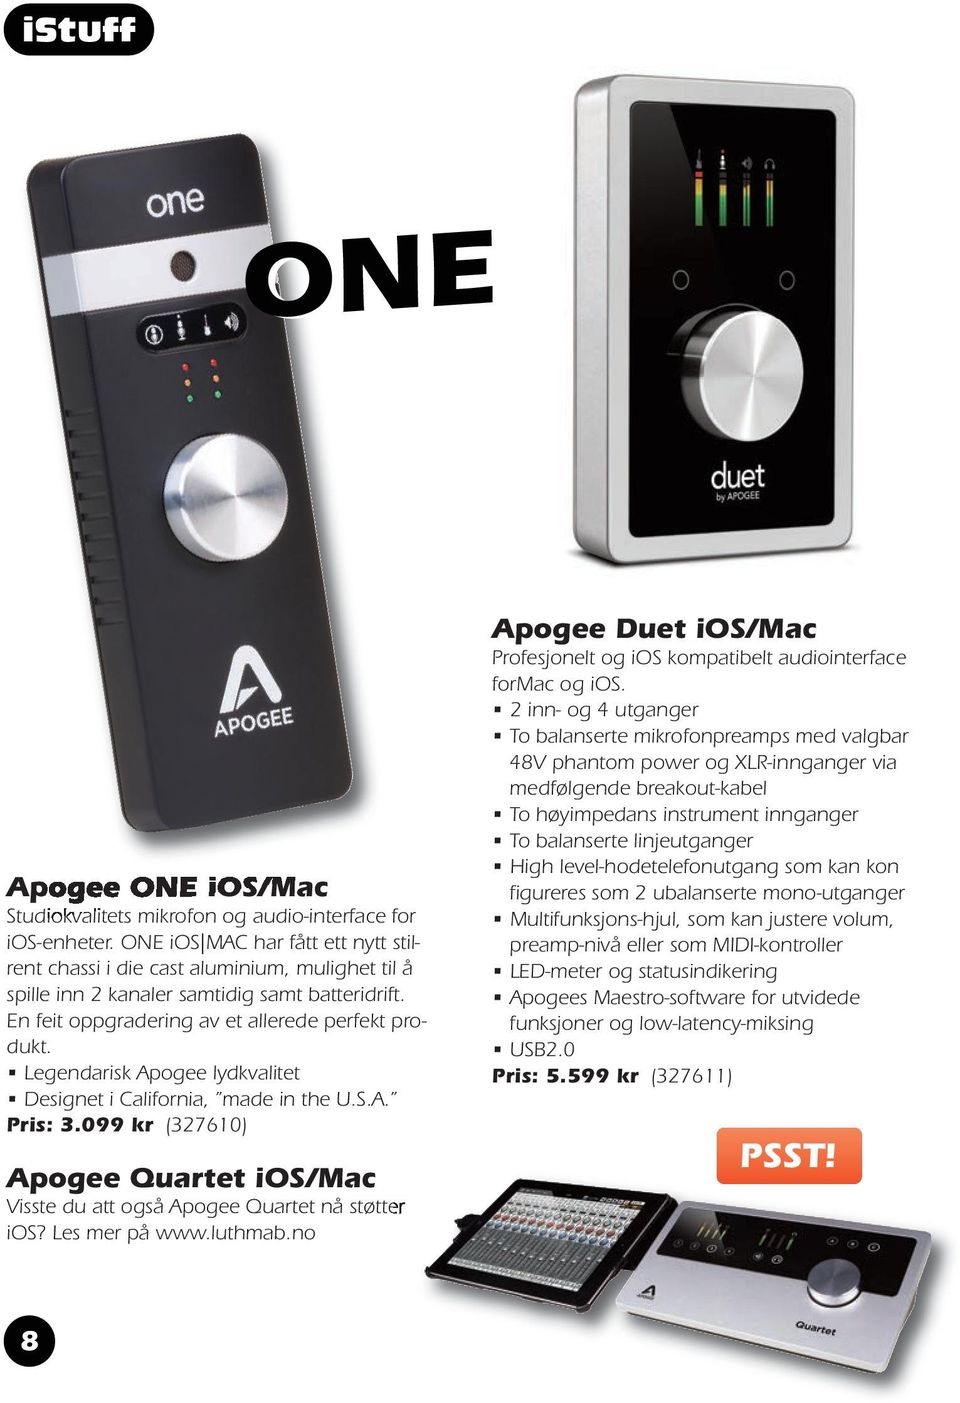 Legendarisk Apogee lydkvalitet Designet i California, made in the U.S.A. Pris: 3.099 kr (327610) Apogee Quartet ios/mac Visste du att også Apogee Quartet nå støtter ios? Les mer på www.luthmab.